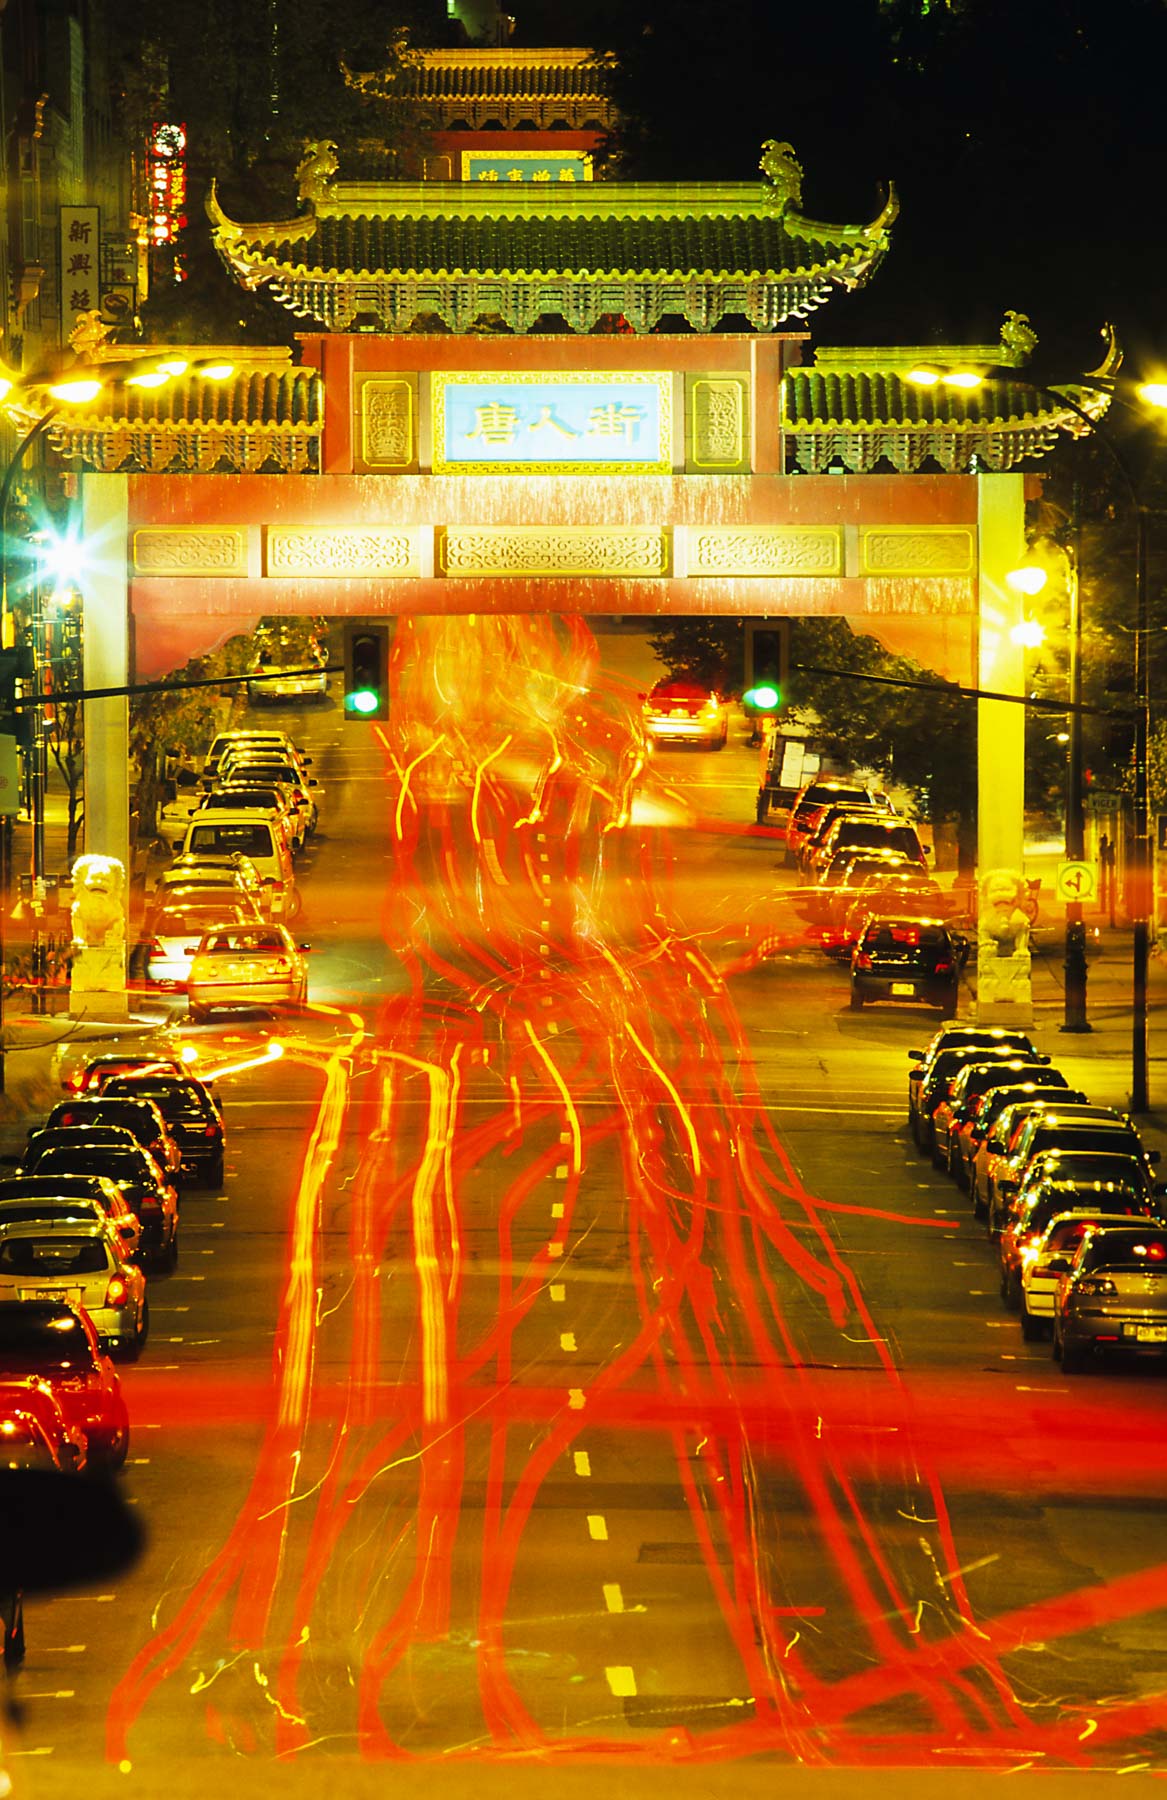 Lumières des voitures circulant de nuit sous une haute arche à l’entrée du quartier chinois.